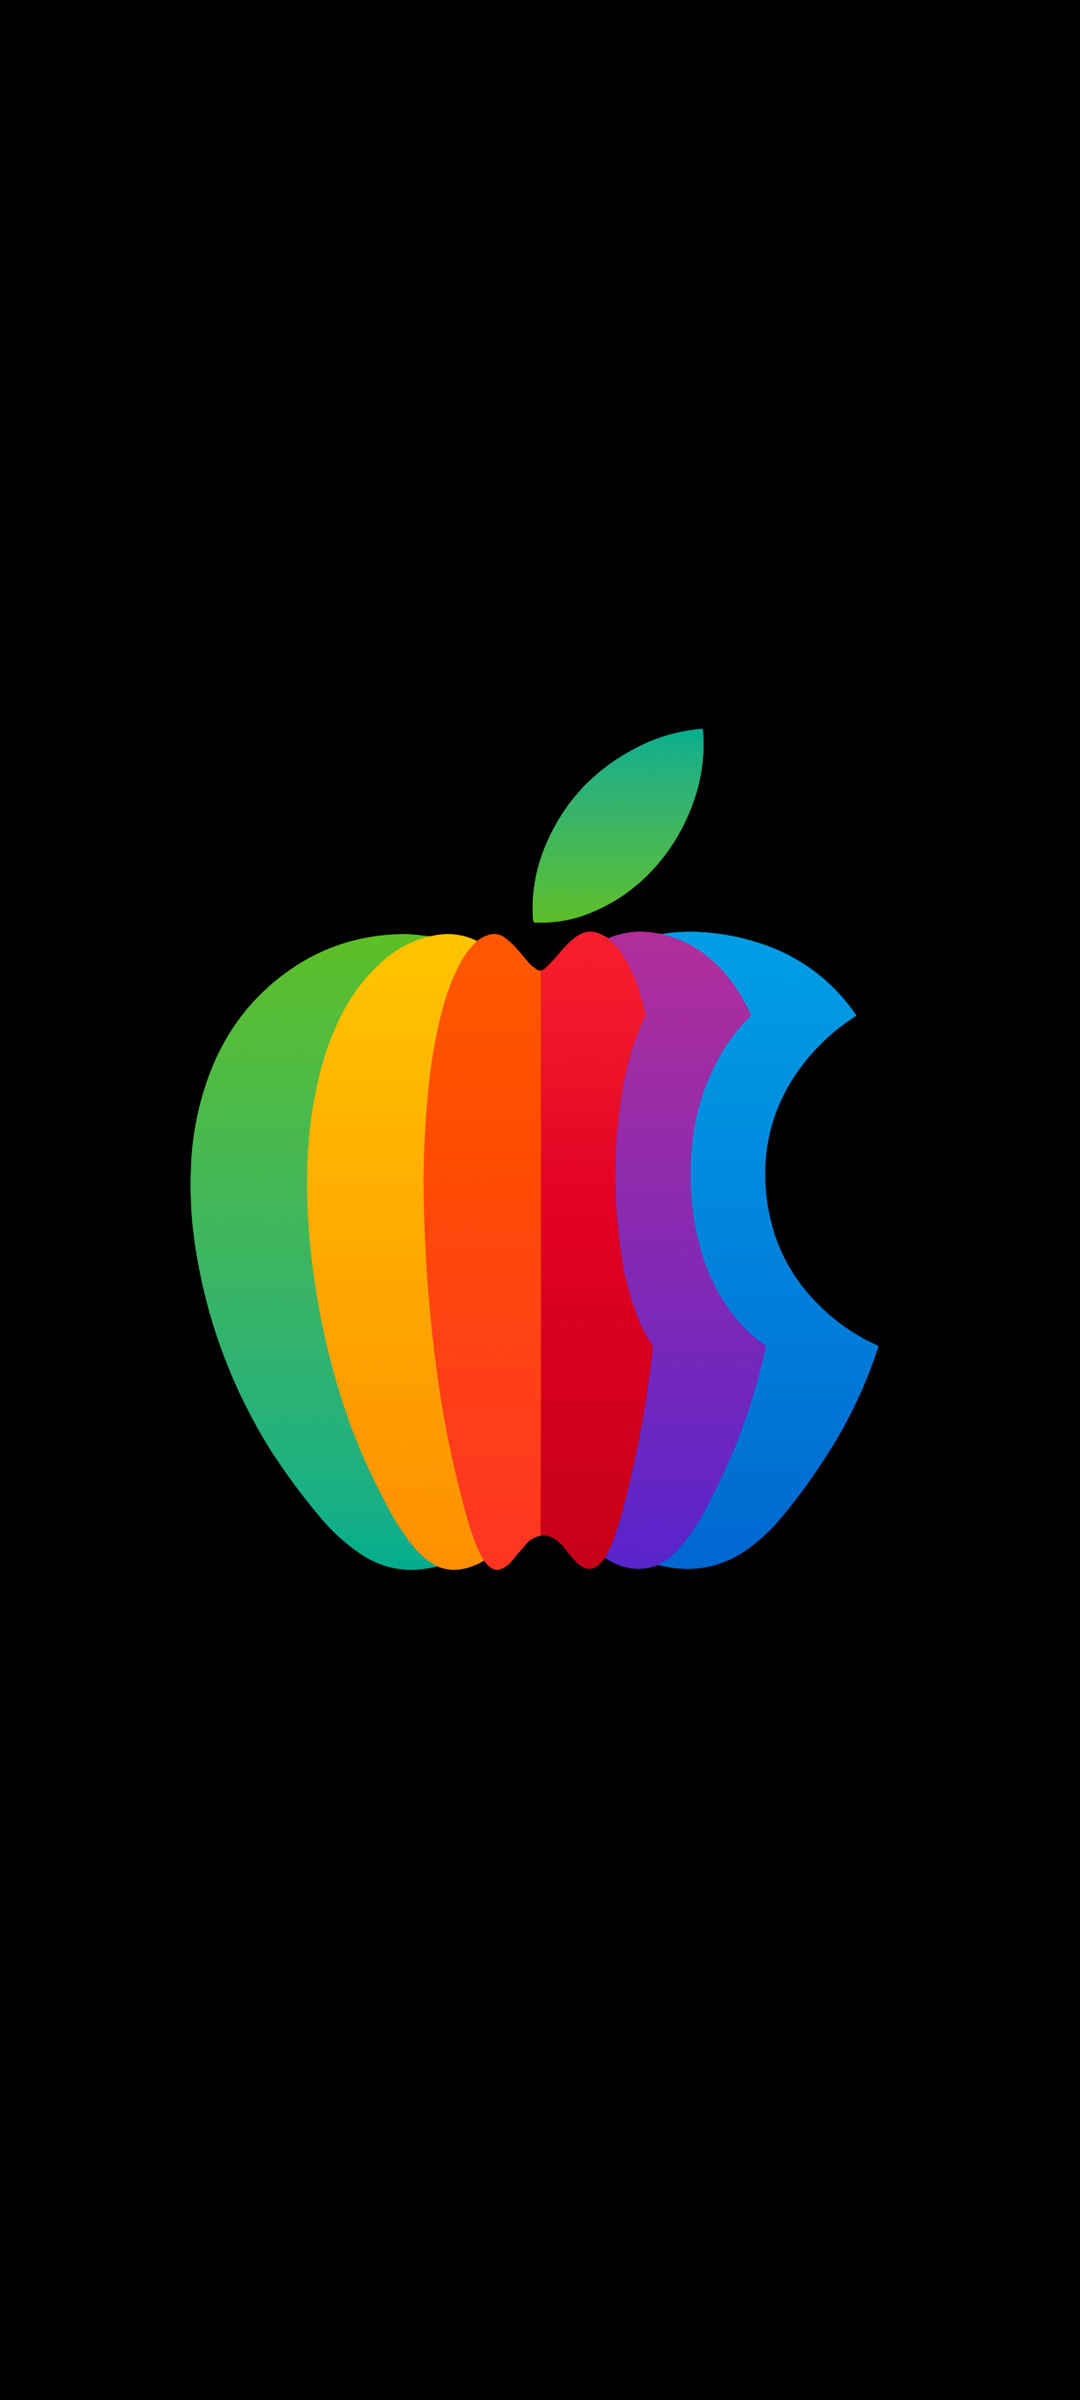 黑色背景苹果Apple彩色Logo 手机壁纸-